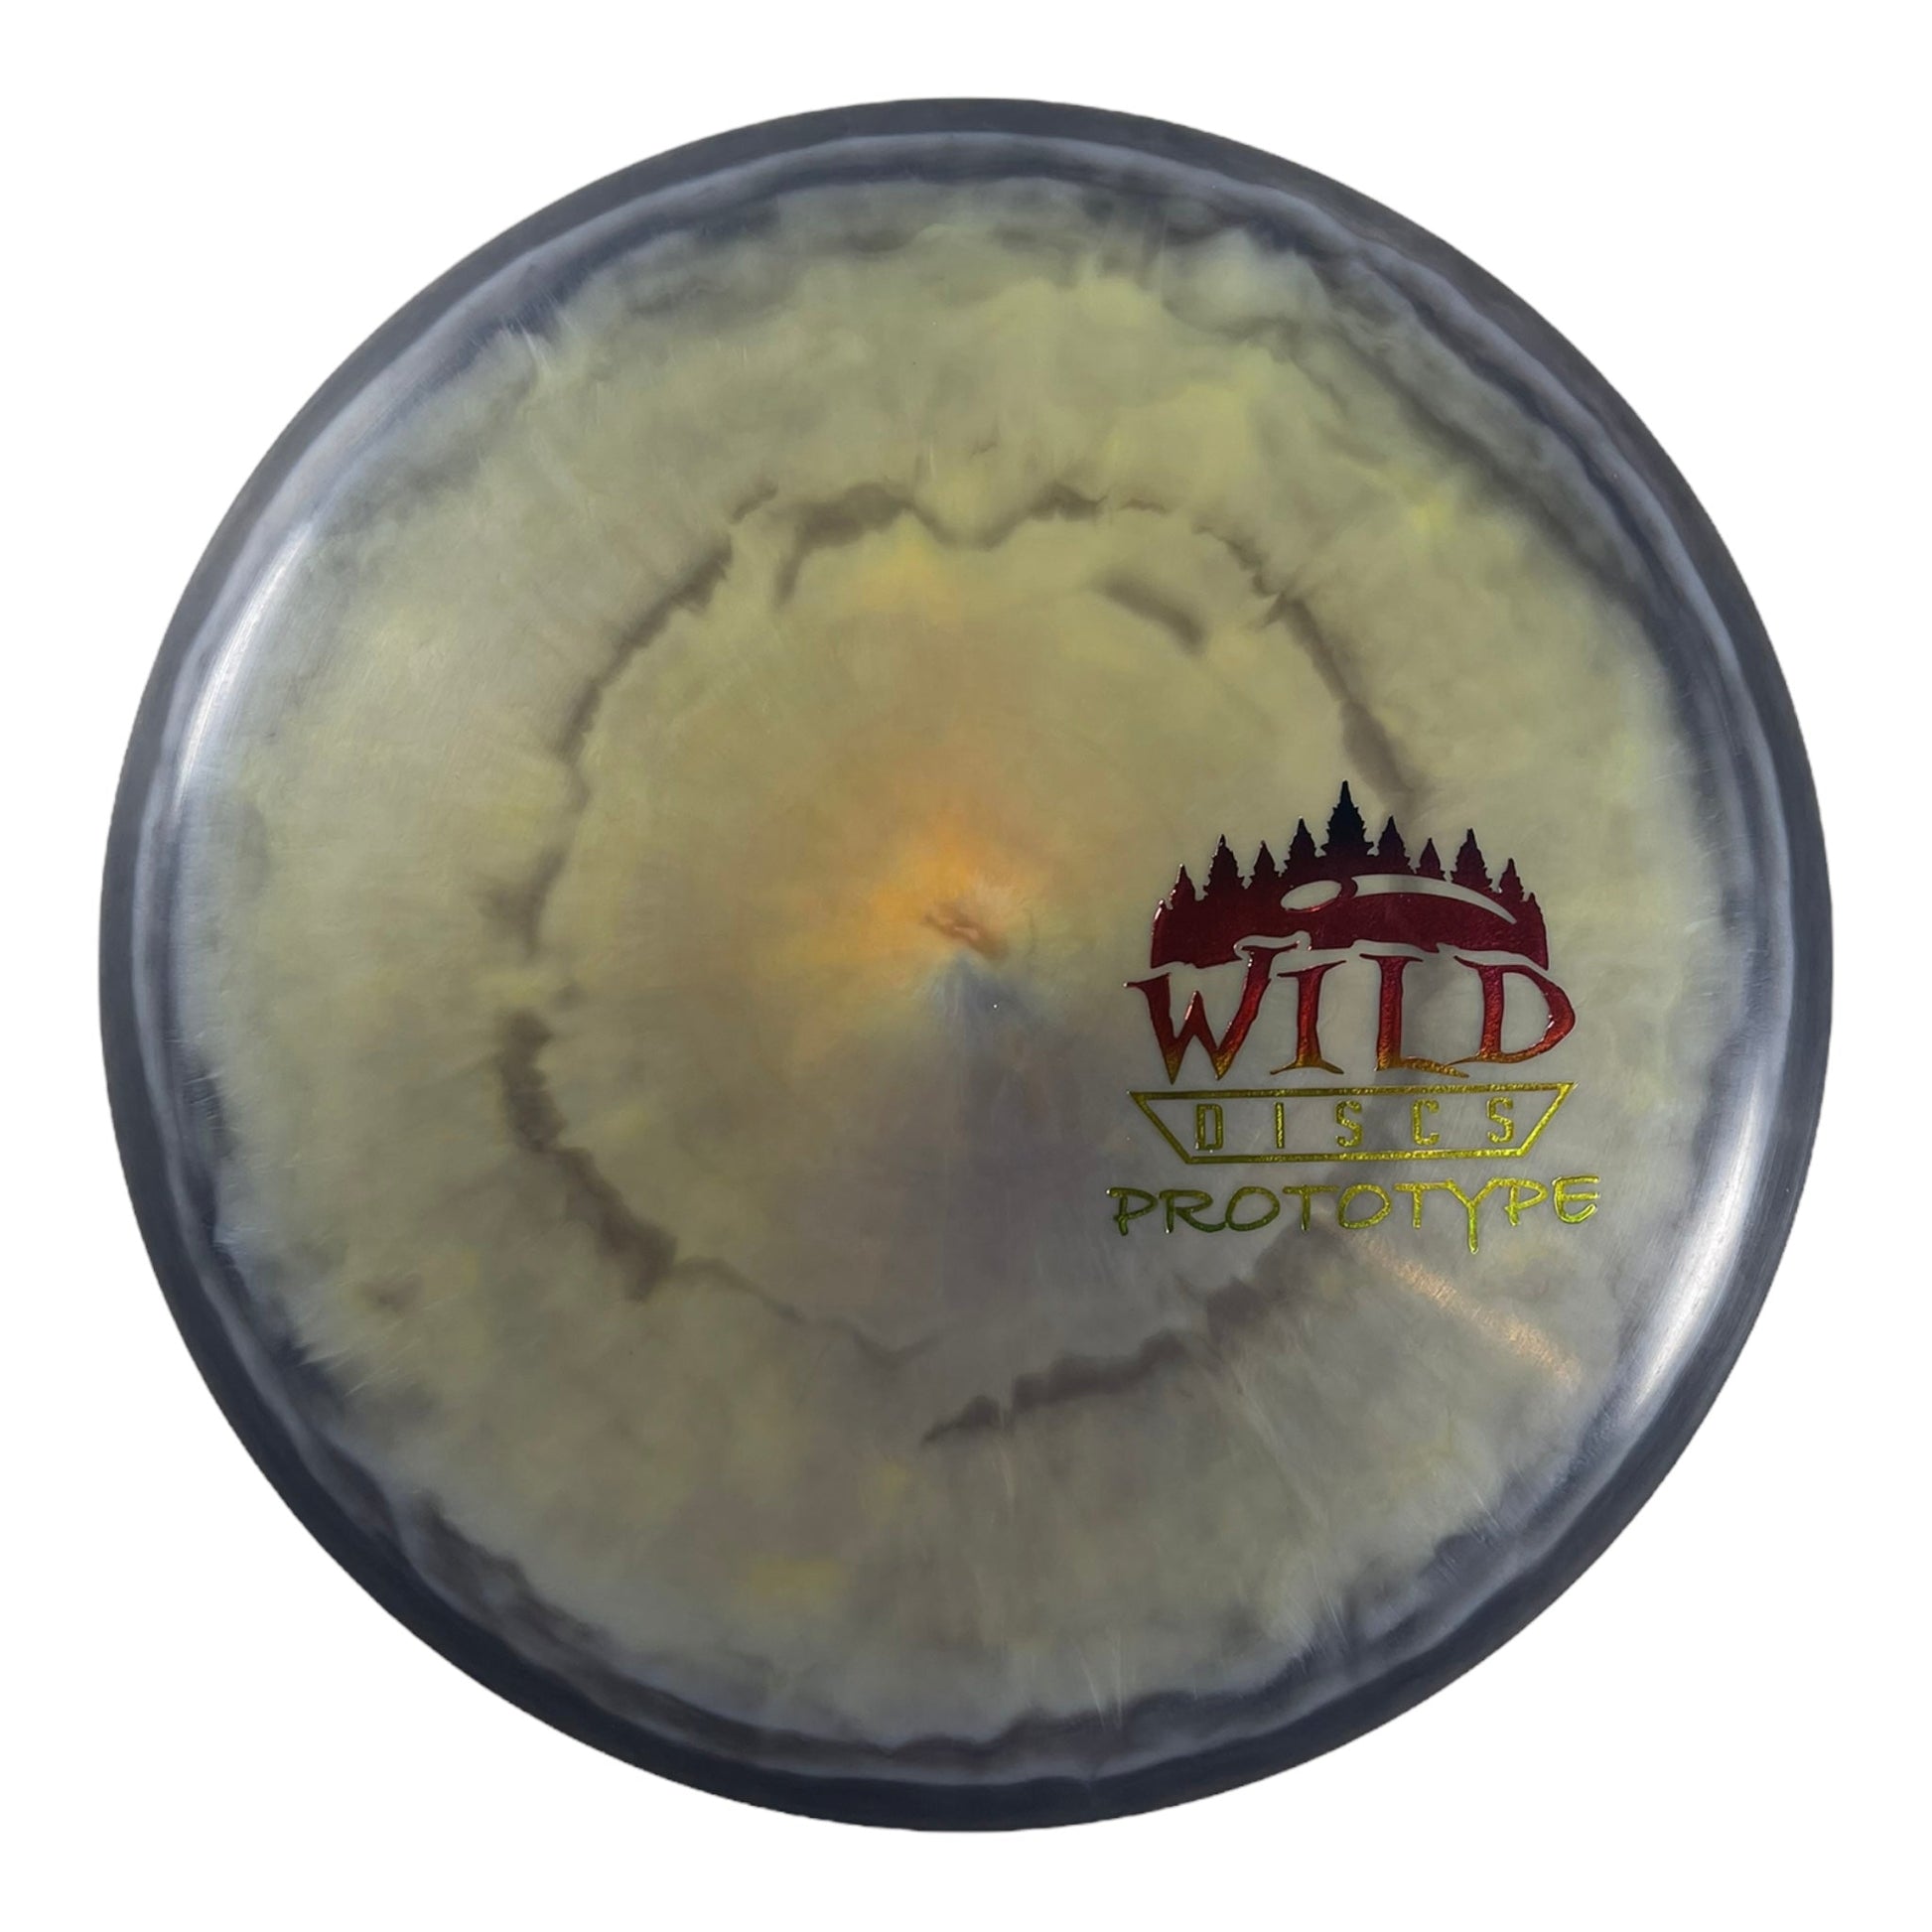 Wild Discs Prototype | Whirlpool | Grey/Rainbow 180g